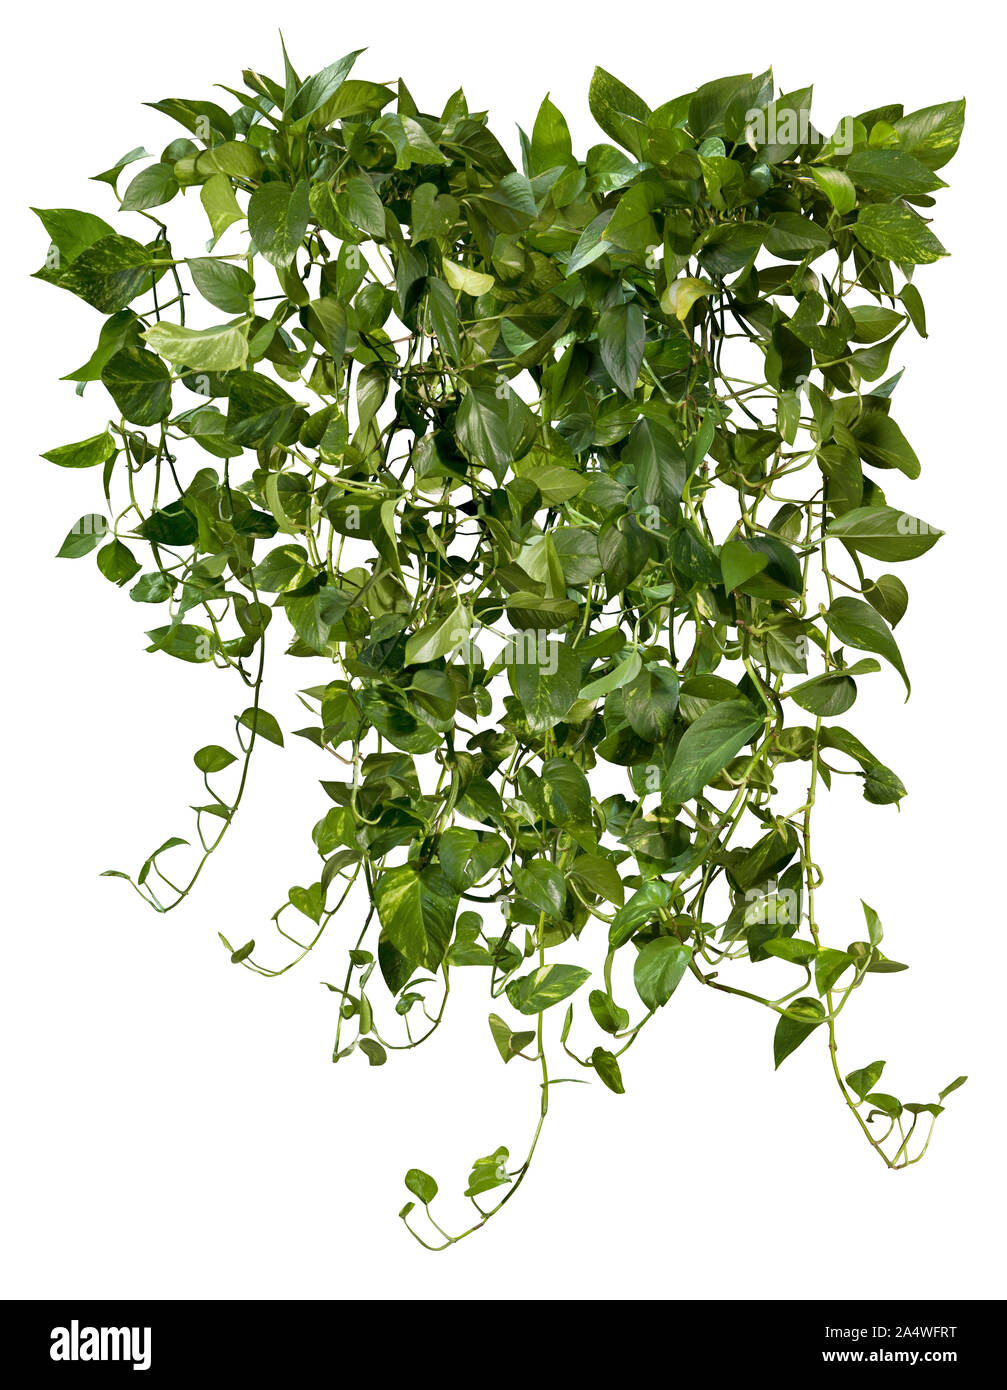 Ausschnitt jungle vIne. Ivy mit grünem Laub. Kletterpflanze auf weißem Hintergrund. Hochwertige wilden Reben Blätter für die professionelle Zusammensetzung. Stockfoto